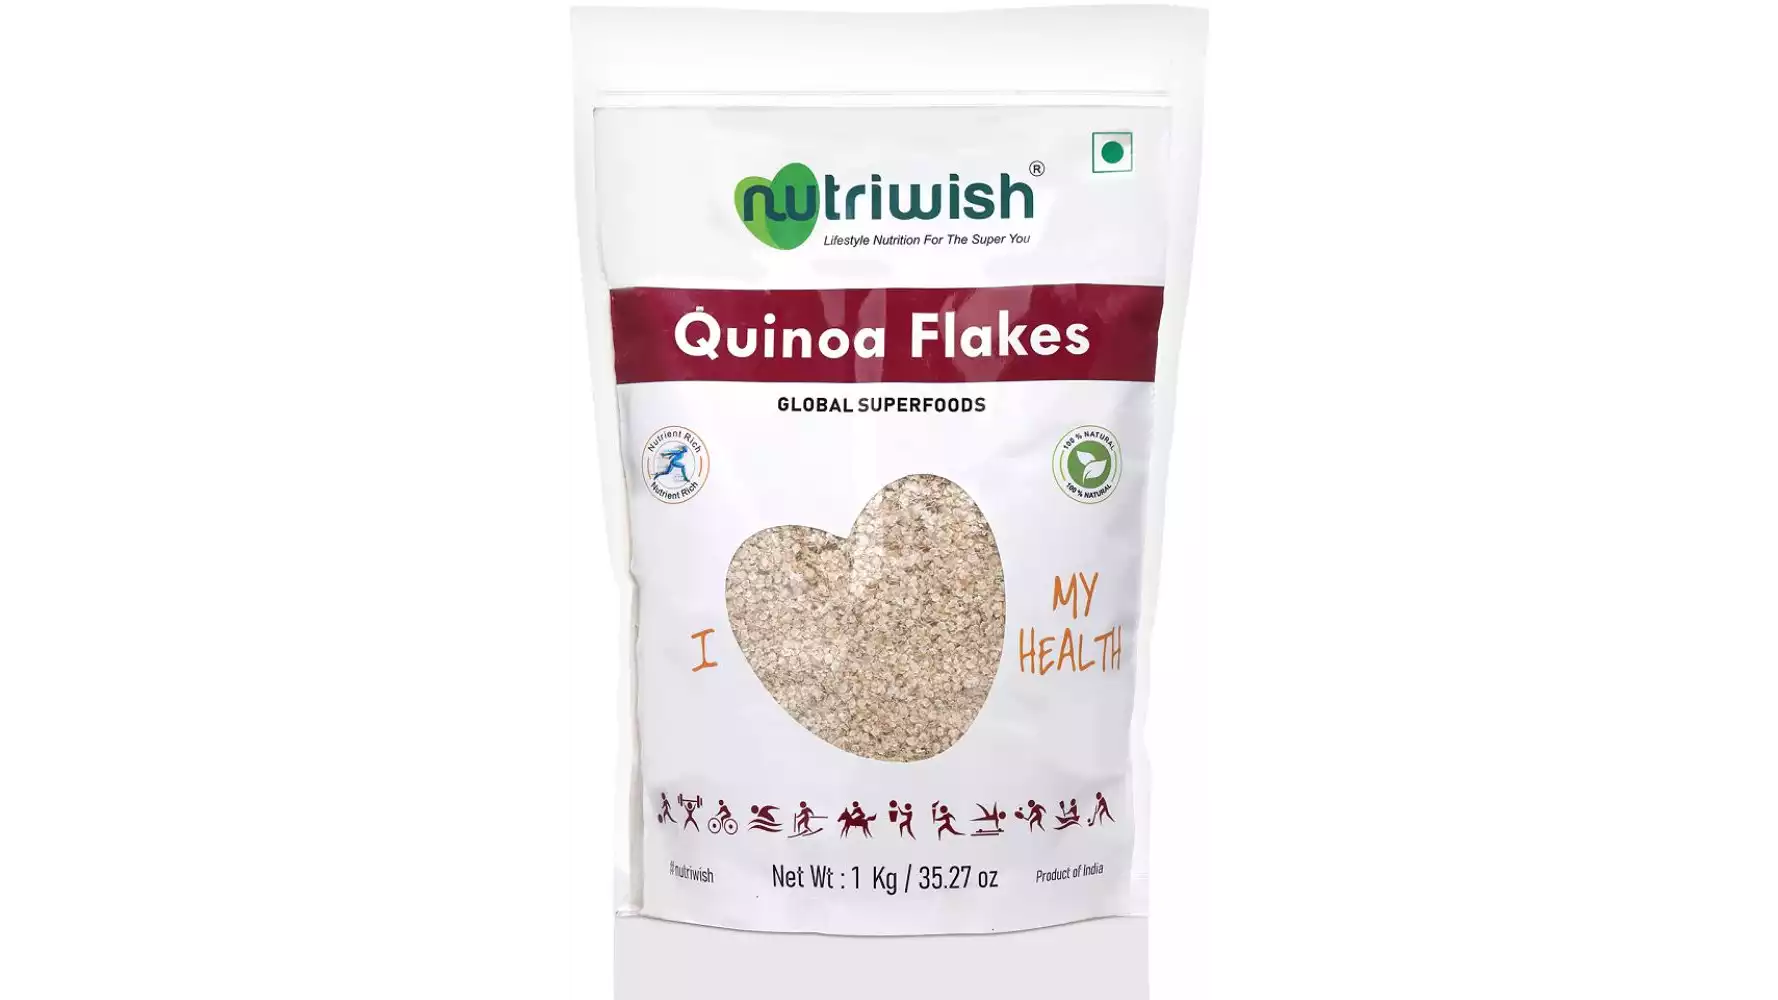 Nutriwish Quinoa Flakes (1kg)